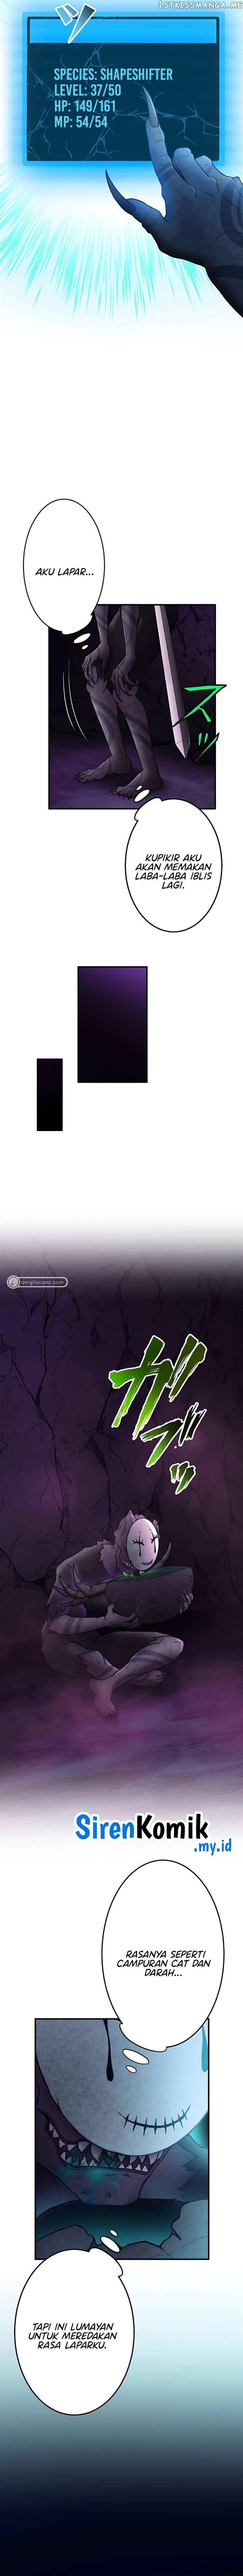 Undead King ~Teihen Bouken-sha, Mamono no Chikara de Shinka Musou~ Chapter 27